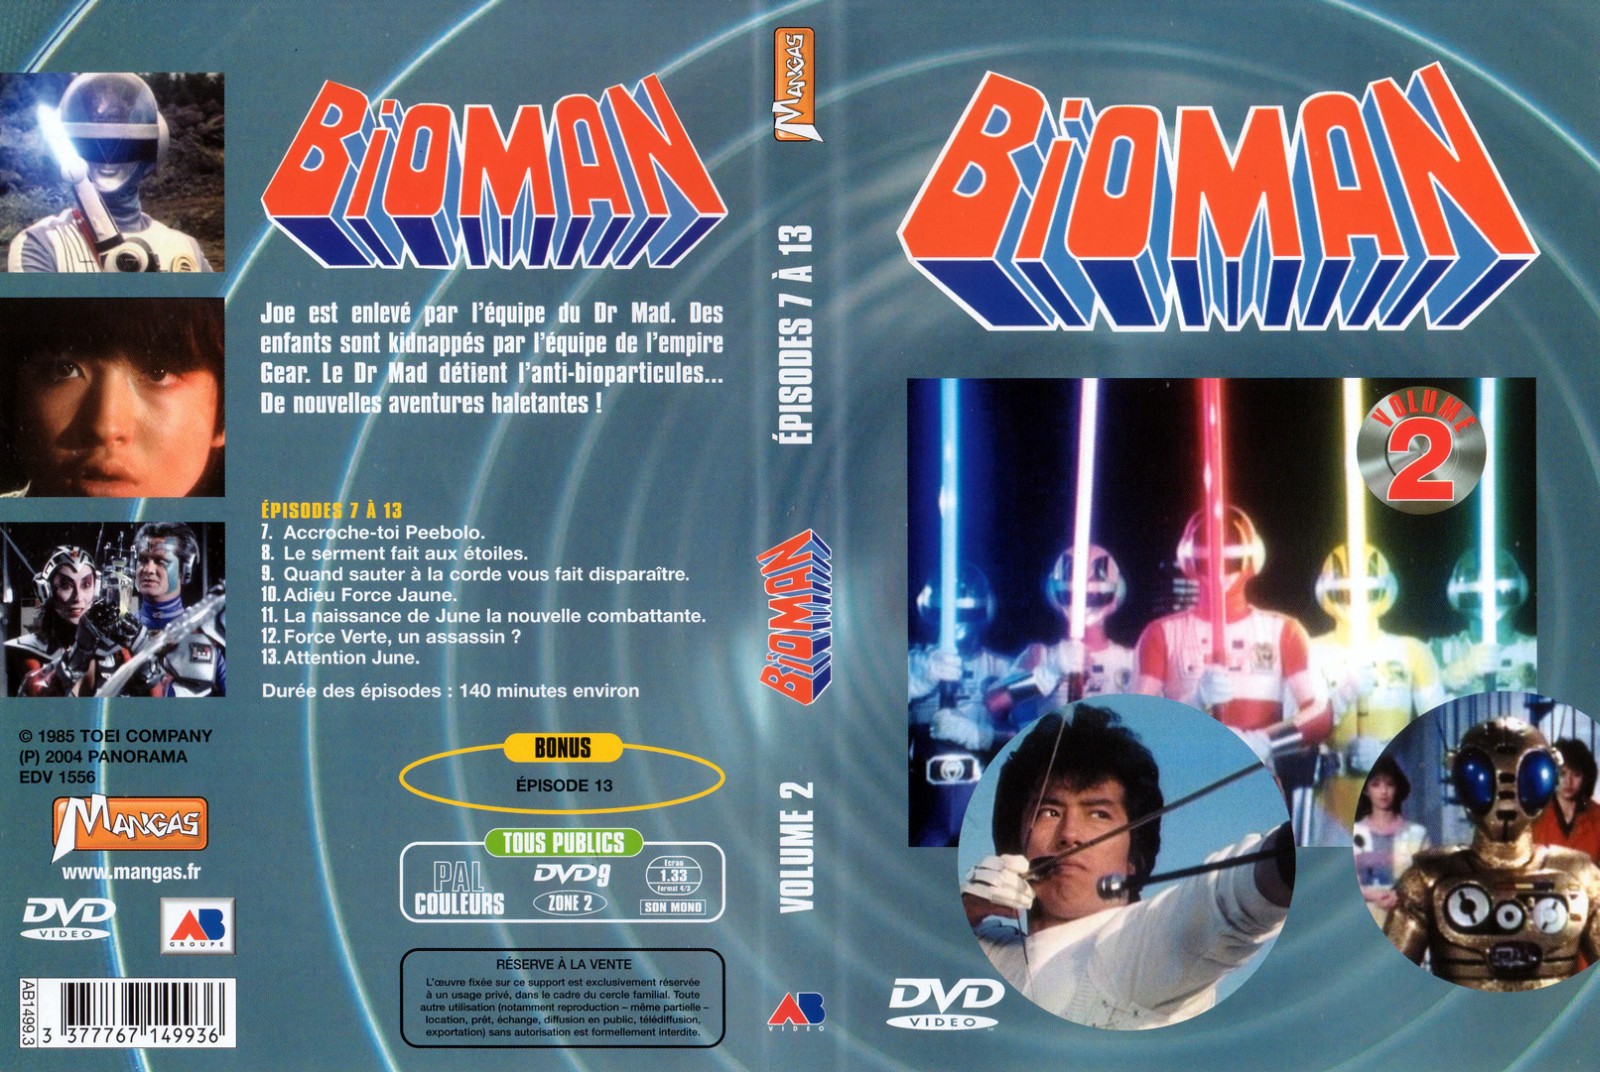 Jaquette DVD Bioman vol 02